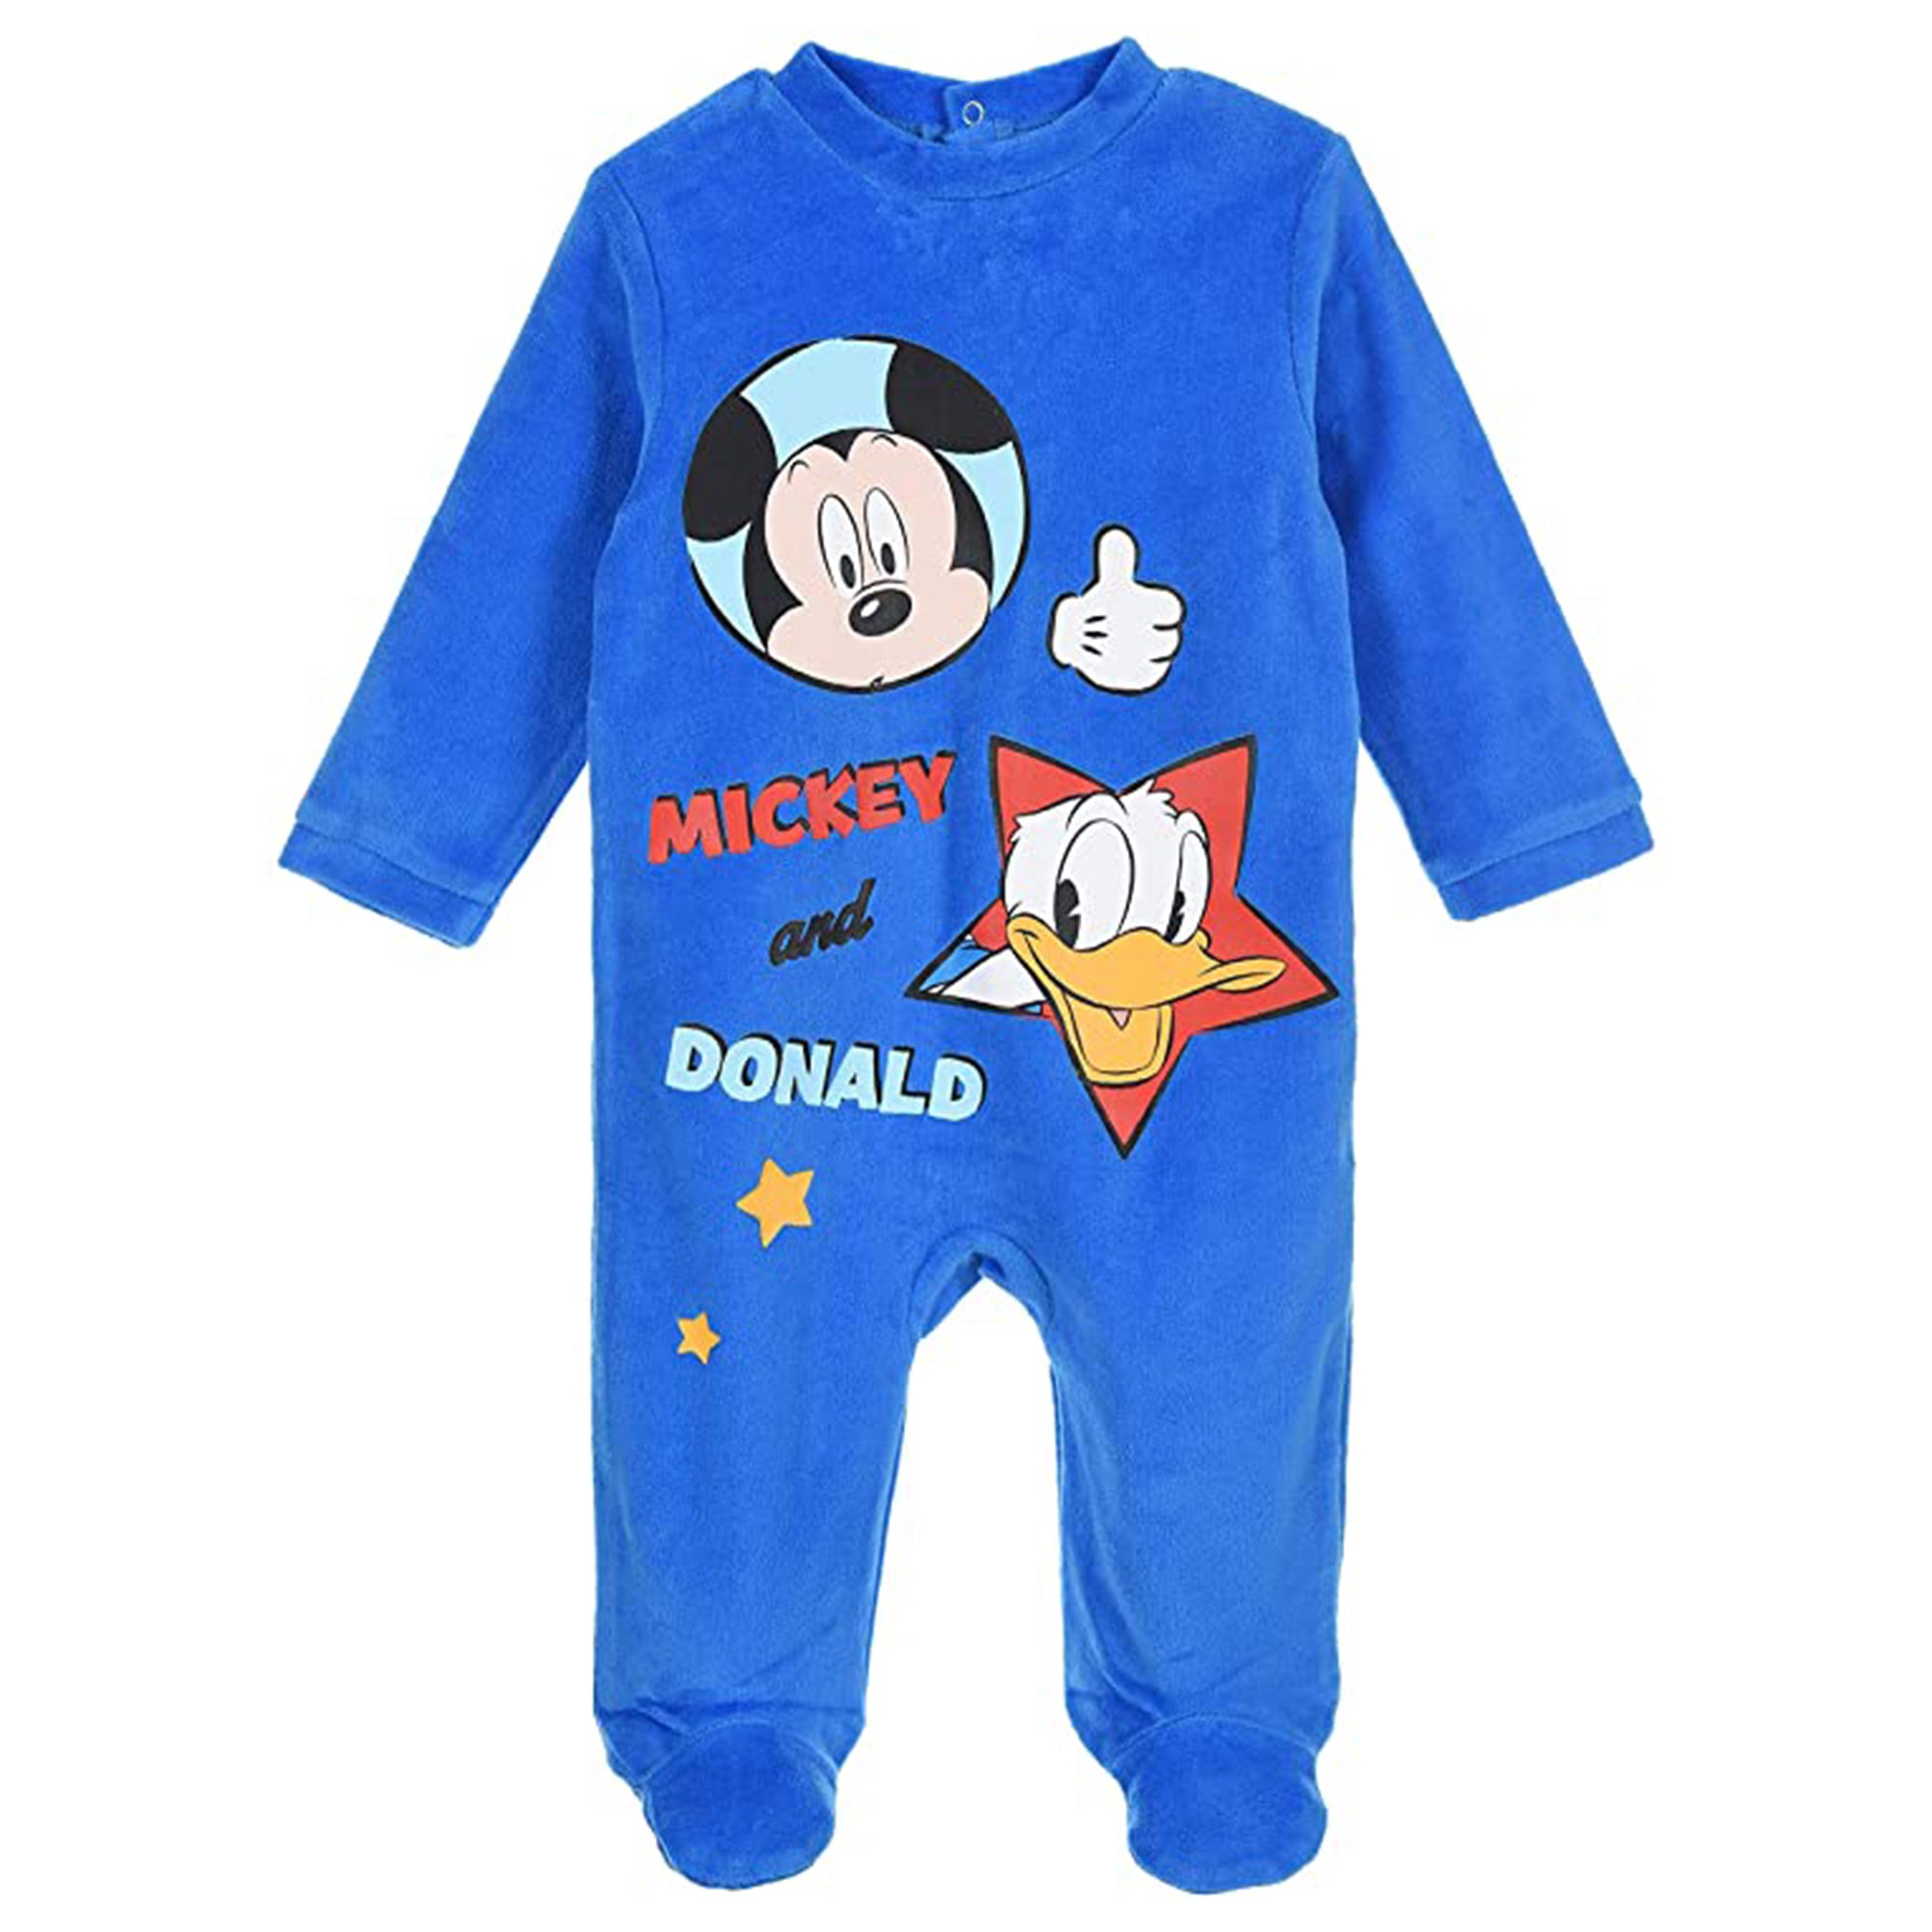 Body neonato Disney Mickey Mouse Paperino tutina Pagliaccetto velluto bimbo 3391